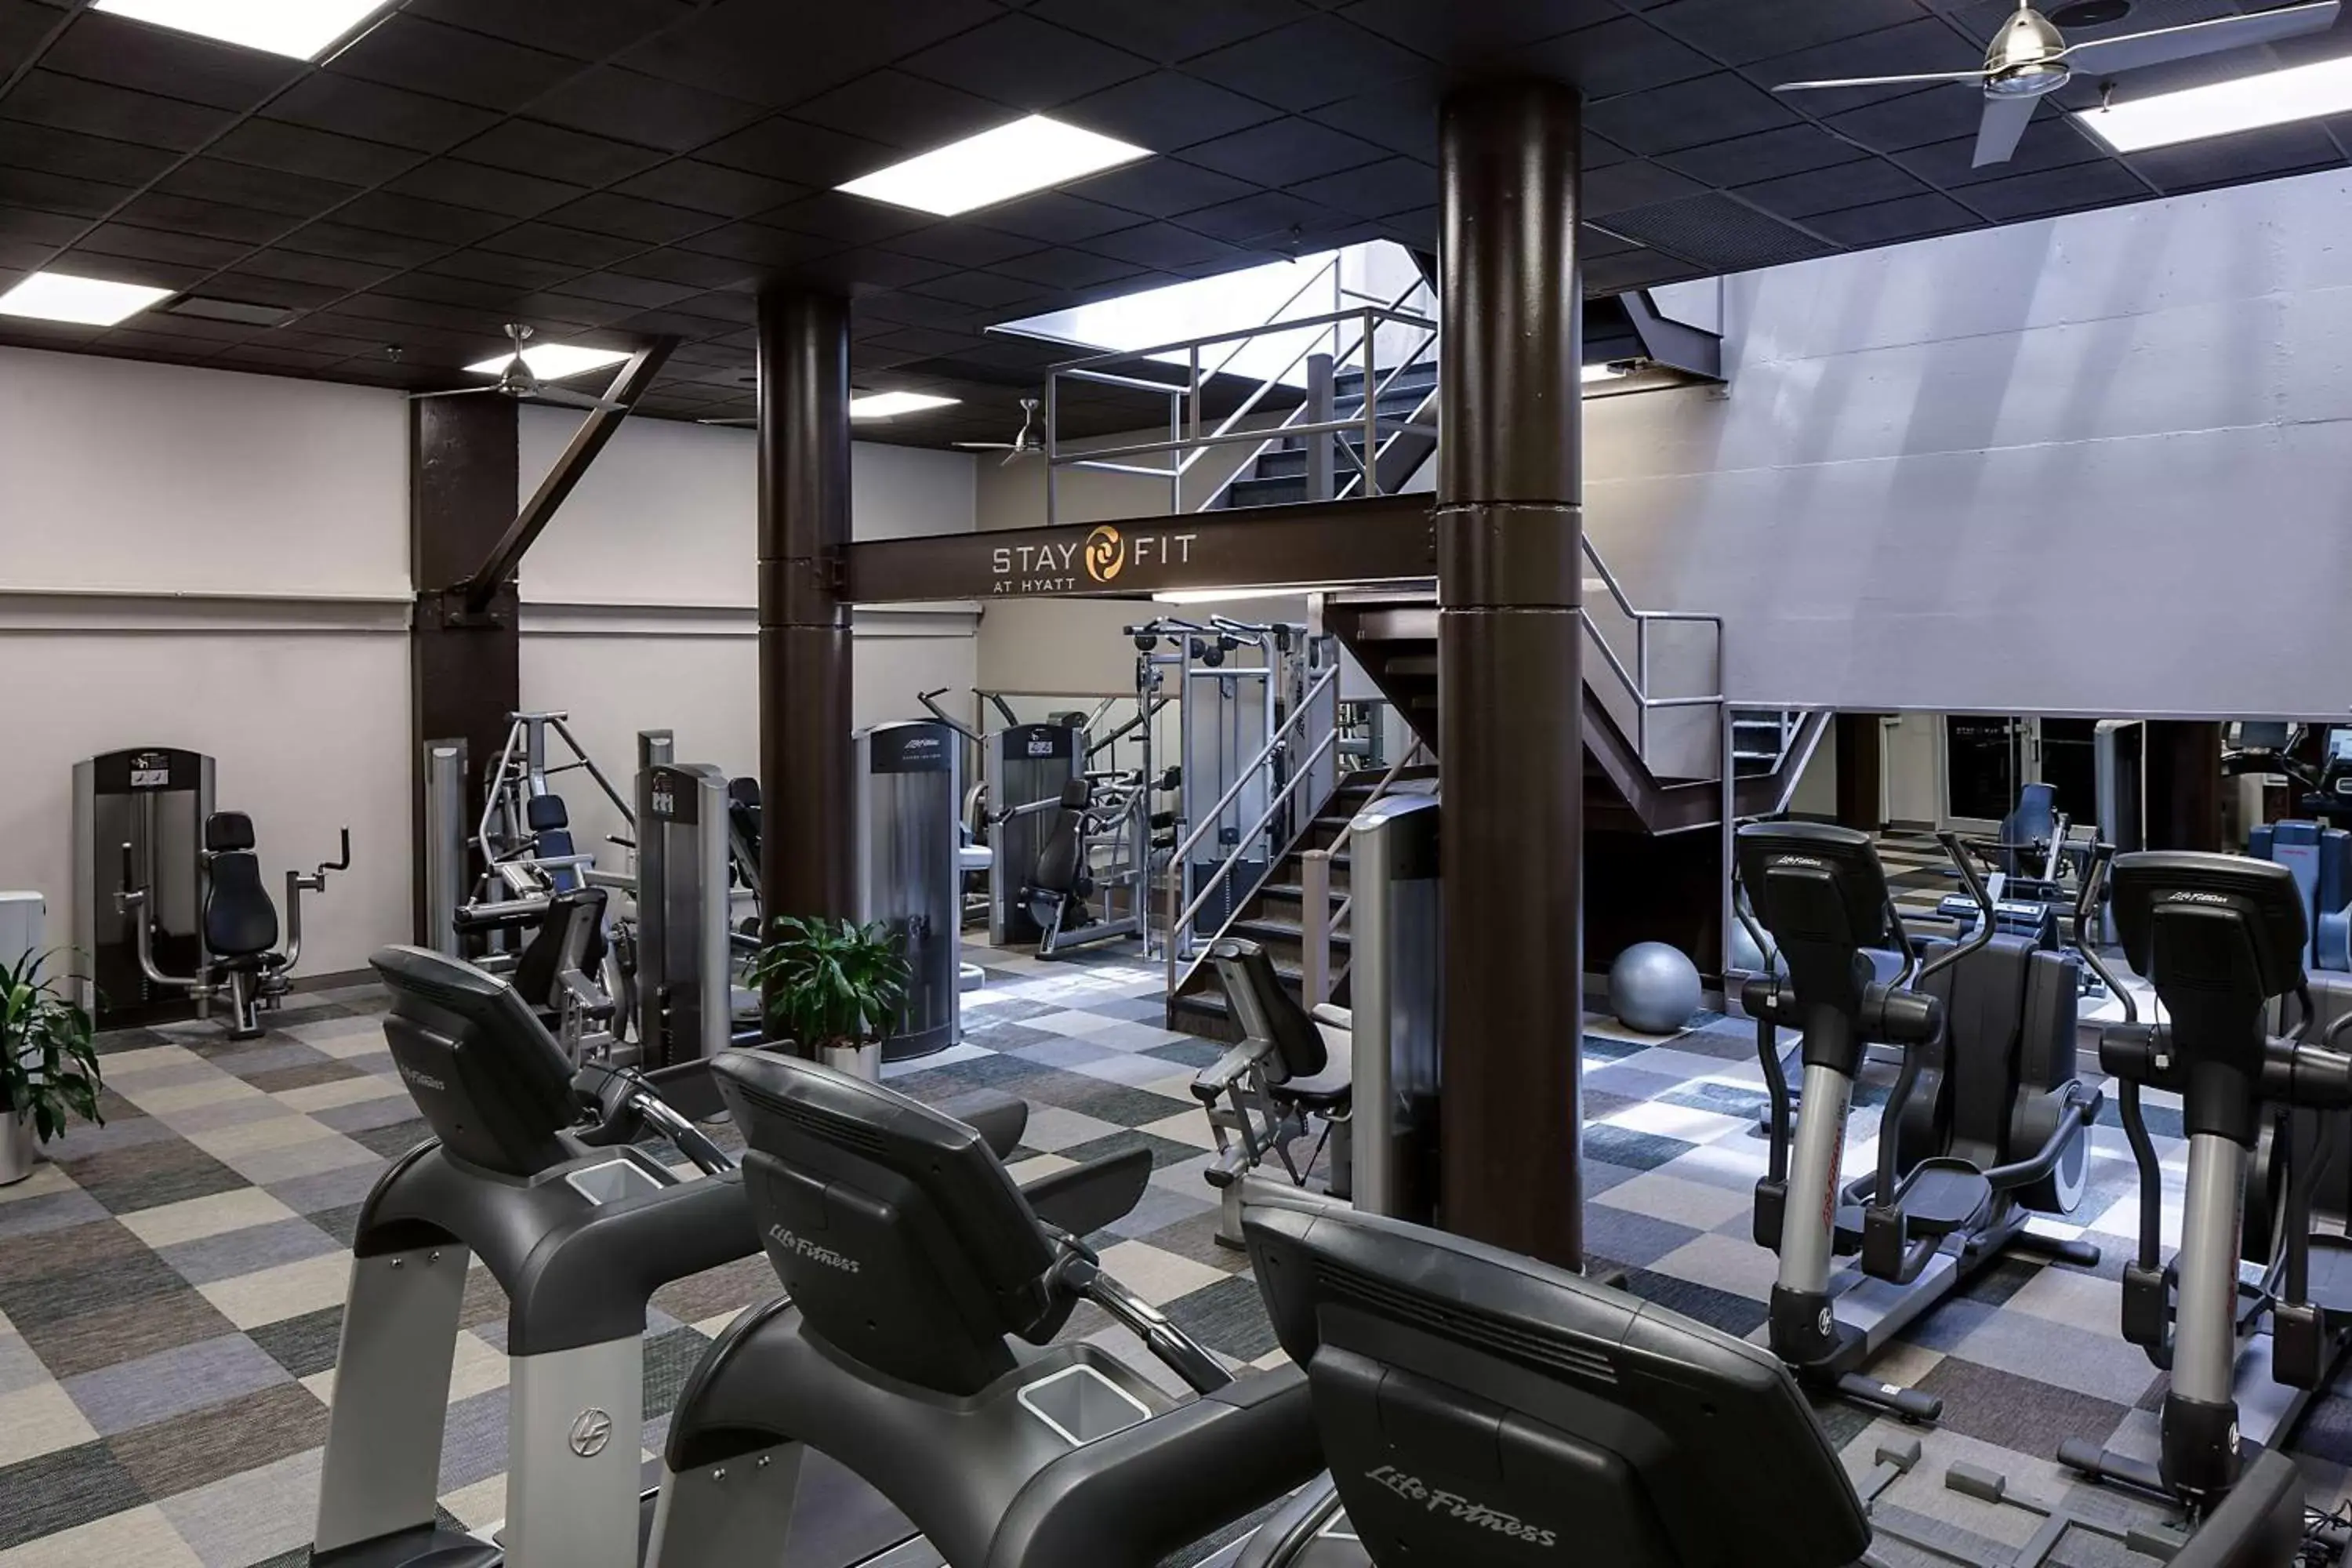 Fitness centre/facilities, Fitness Center/Facilities in Hyatt Regency Baltimore